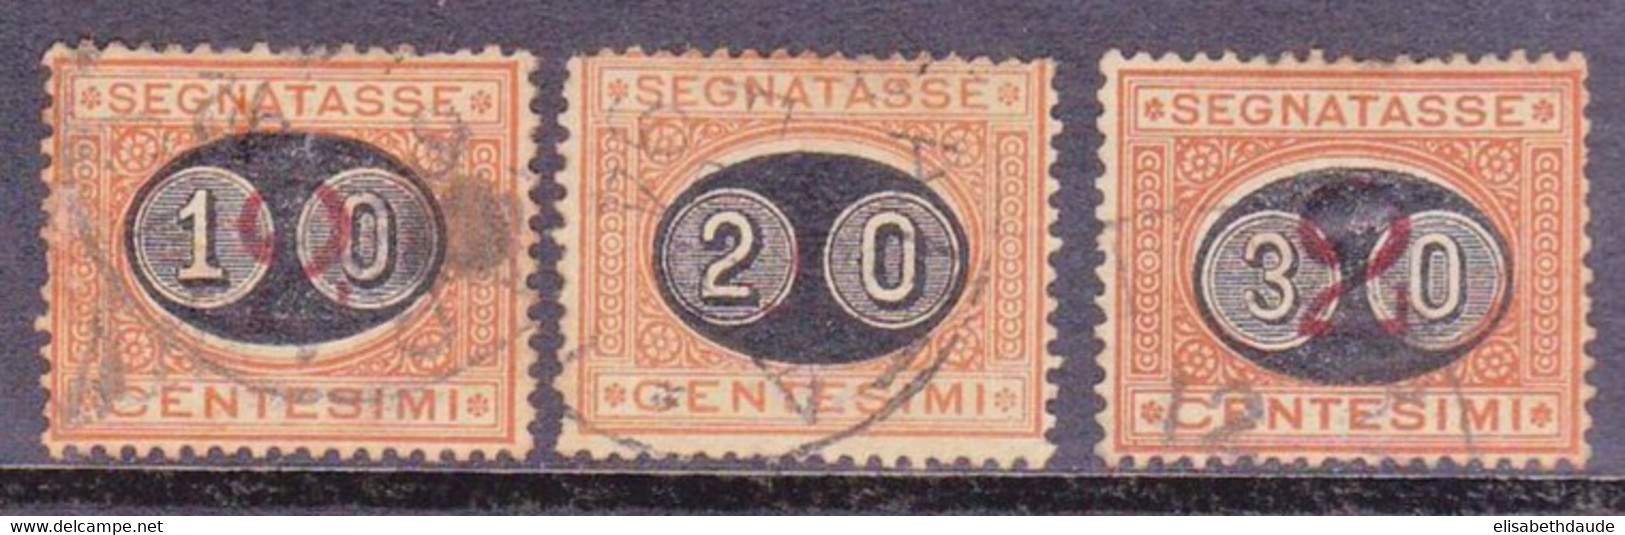 ITALIE - 1890 - YVERT N°22/24 OBLITERES - TAXE - COTE = 57 EUROS - Oblitérés